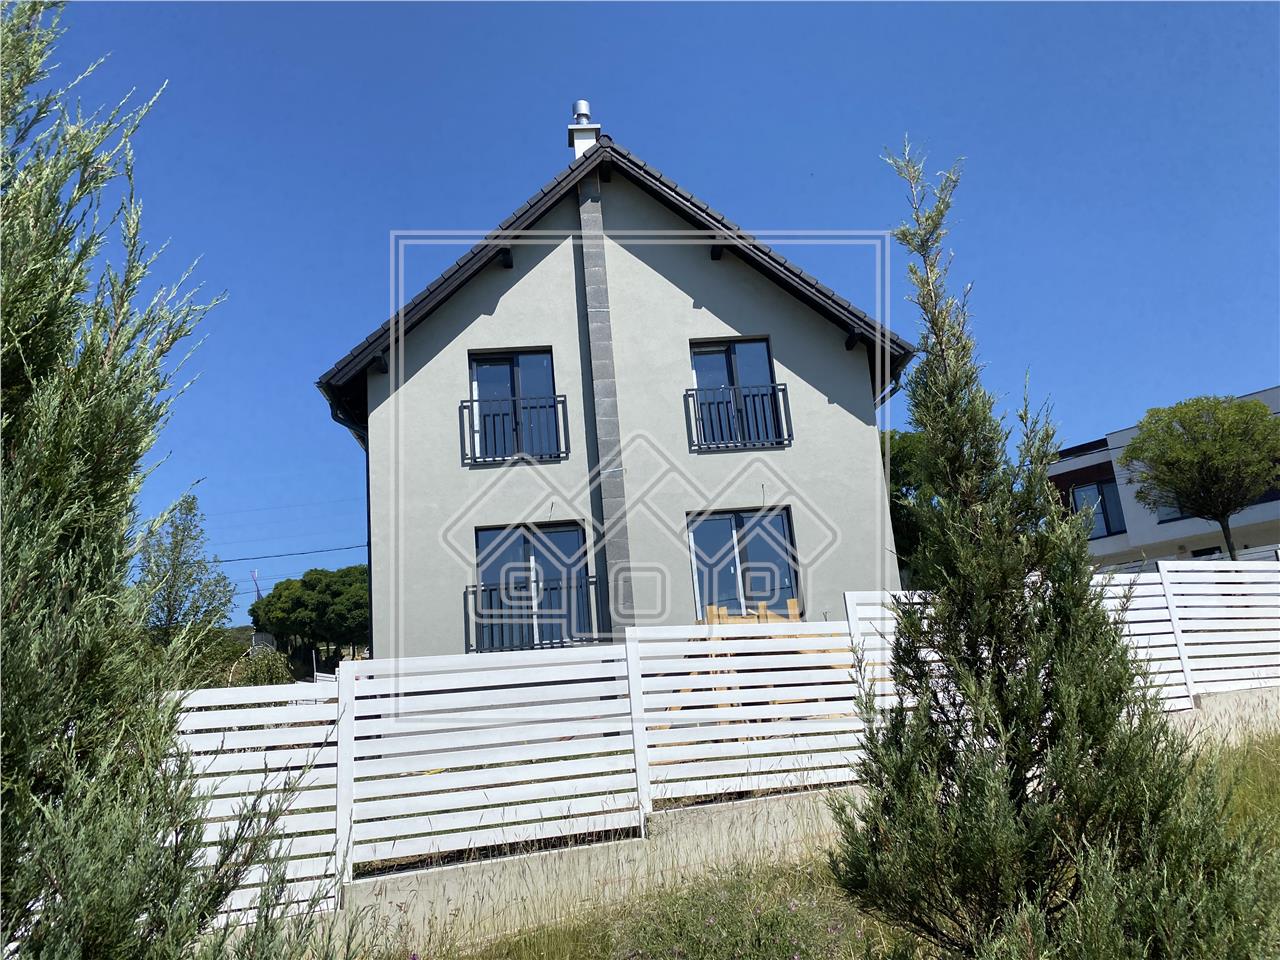 Haus kaufen in Sibiu Grundstuck von 778 qm